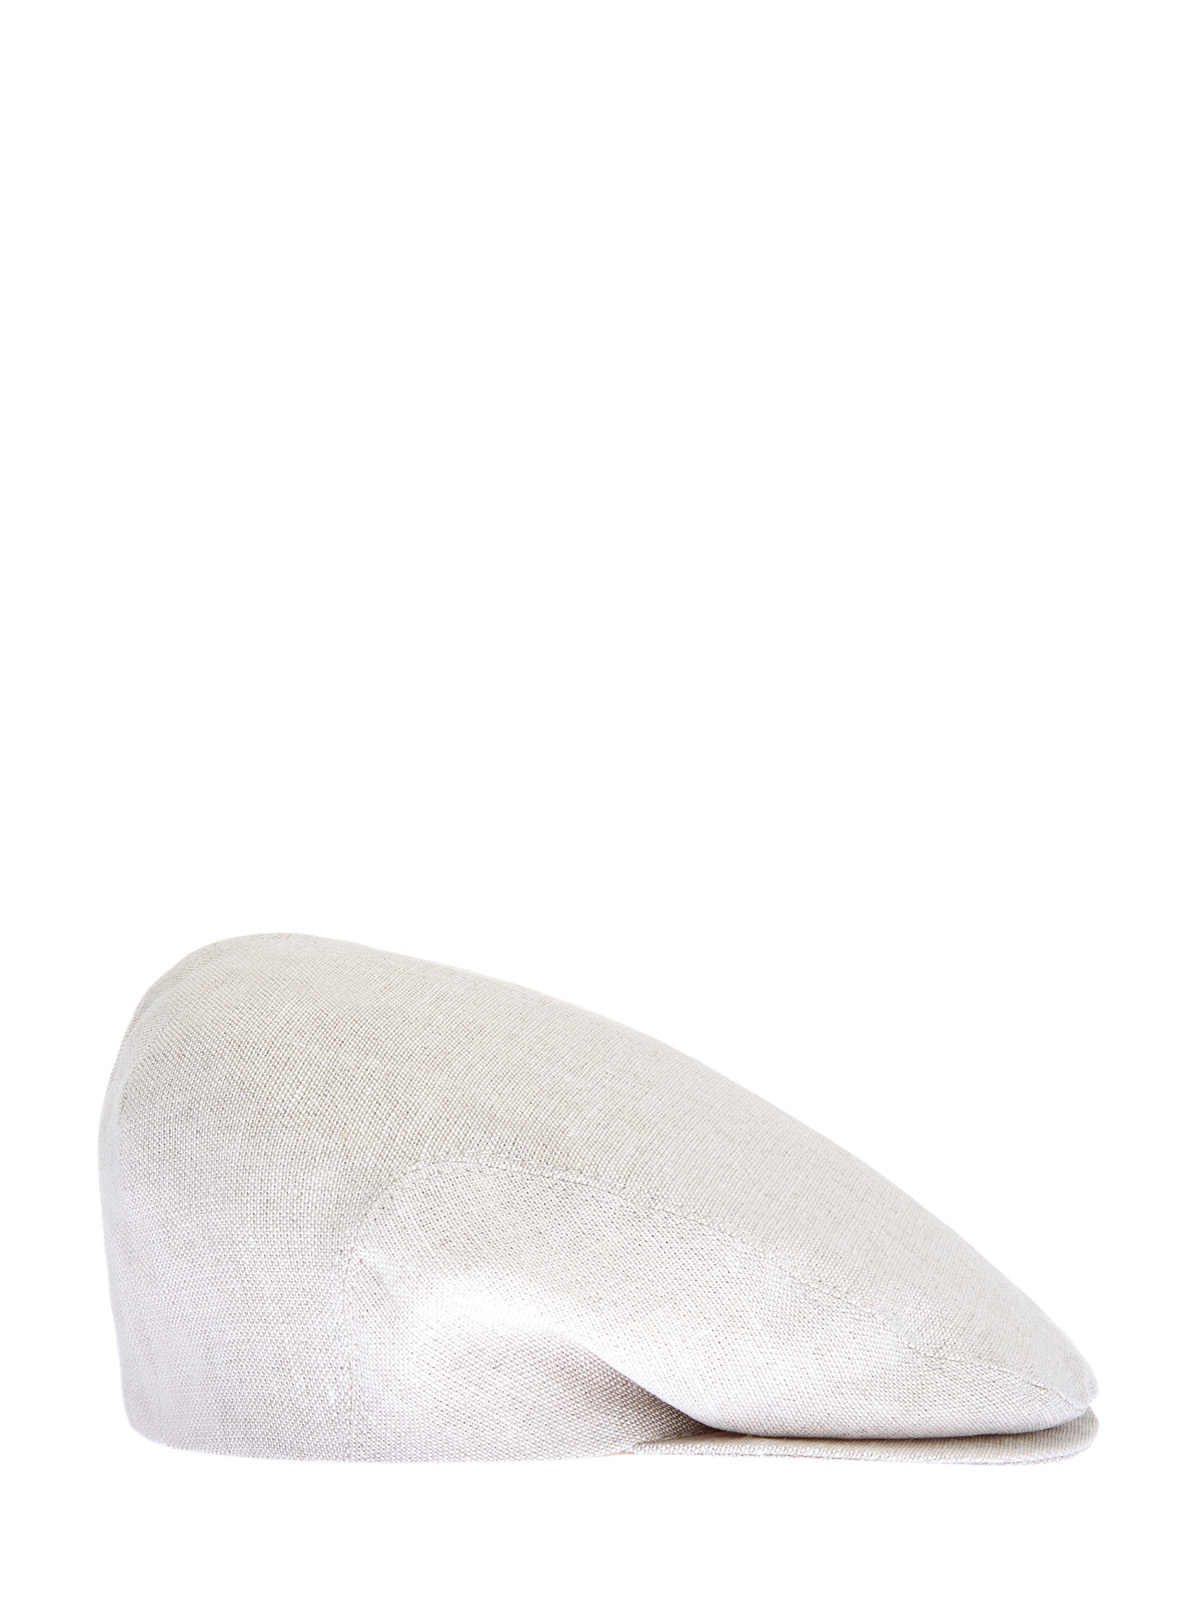 Светлая кепка-коппола из дышащей льняной ткани ELEVENTY, цвет белый, размер M;L - фото 3